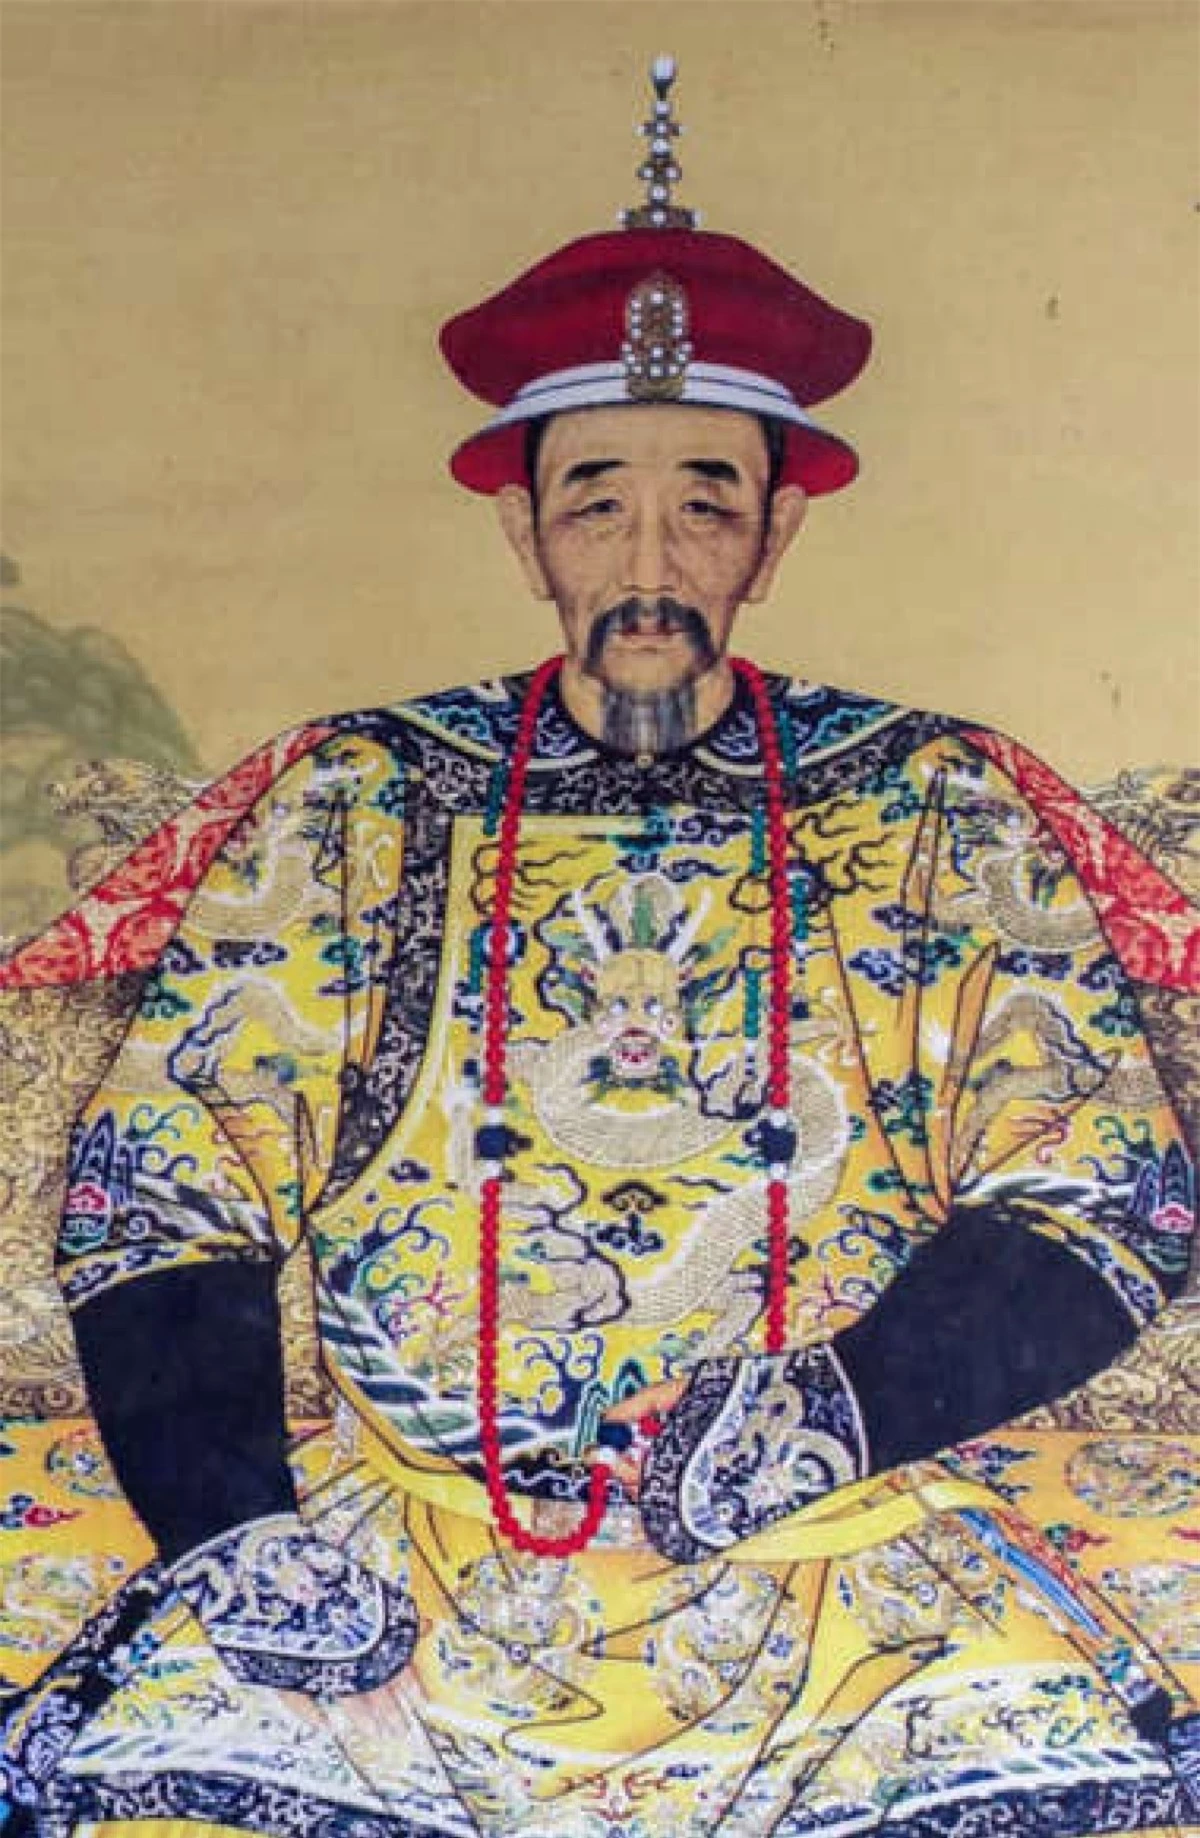 Vua Khang Hy. Vị hoàng đế thứ hai của nhà Thanh đã trị vì Trung Quốc trong 61 năm. Vua Khang Hy đã lãnh đạo đất nước trải qua một thời kỳ thịnh vượng, mở một số cảng của Trung Quốc để cho phép ngoại thương, đồng thời khuyến khích giáo dục và nghệ thuật.